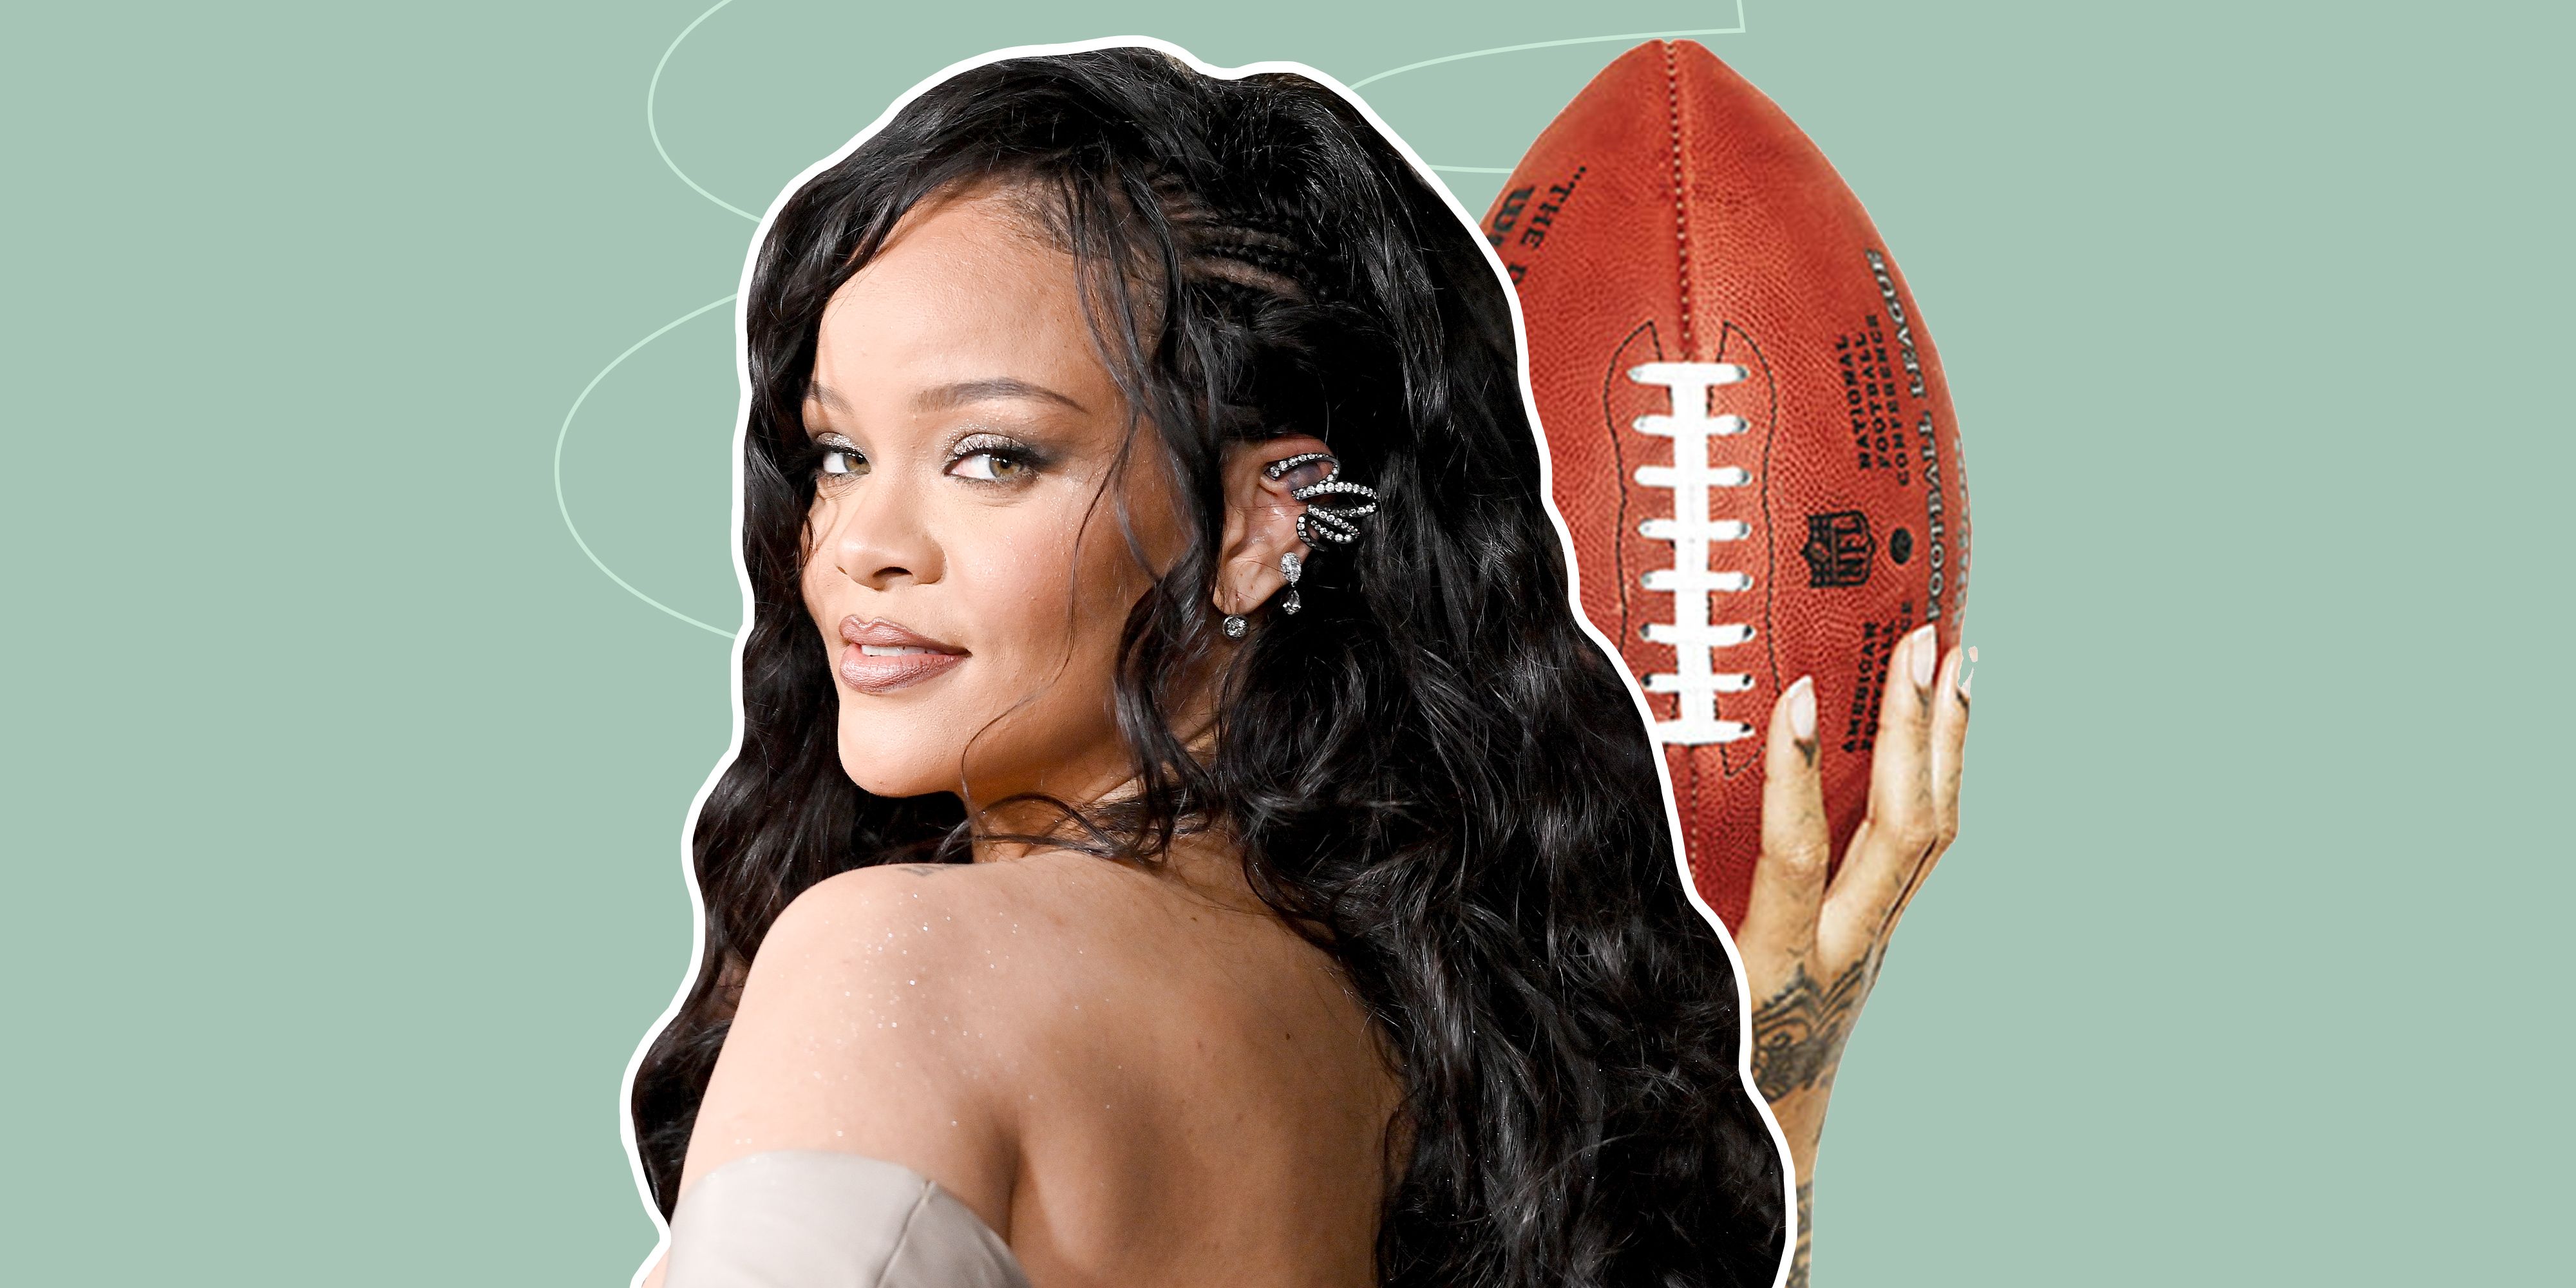 Dre, Snoop, Eminem, Blige, Lamar Bring Hip-Hop Royalty To Super Bowl